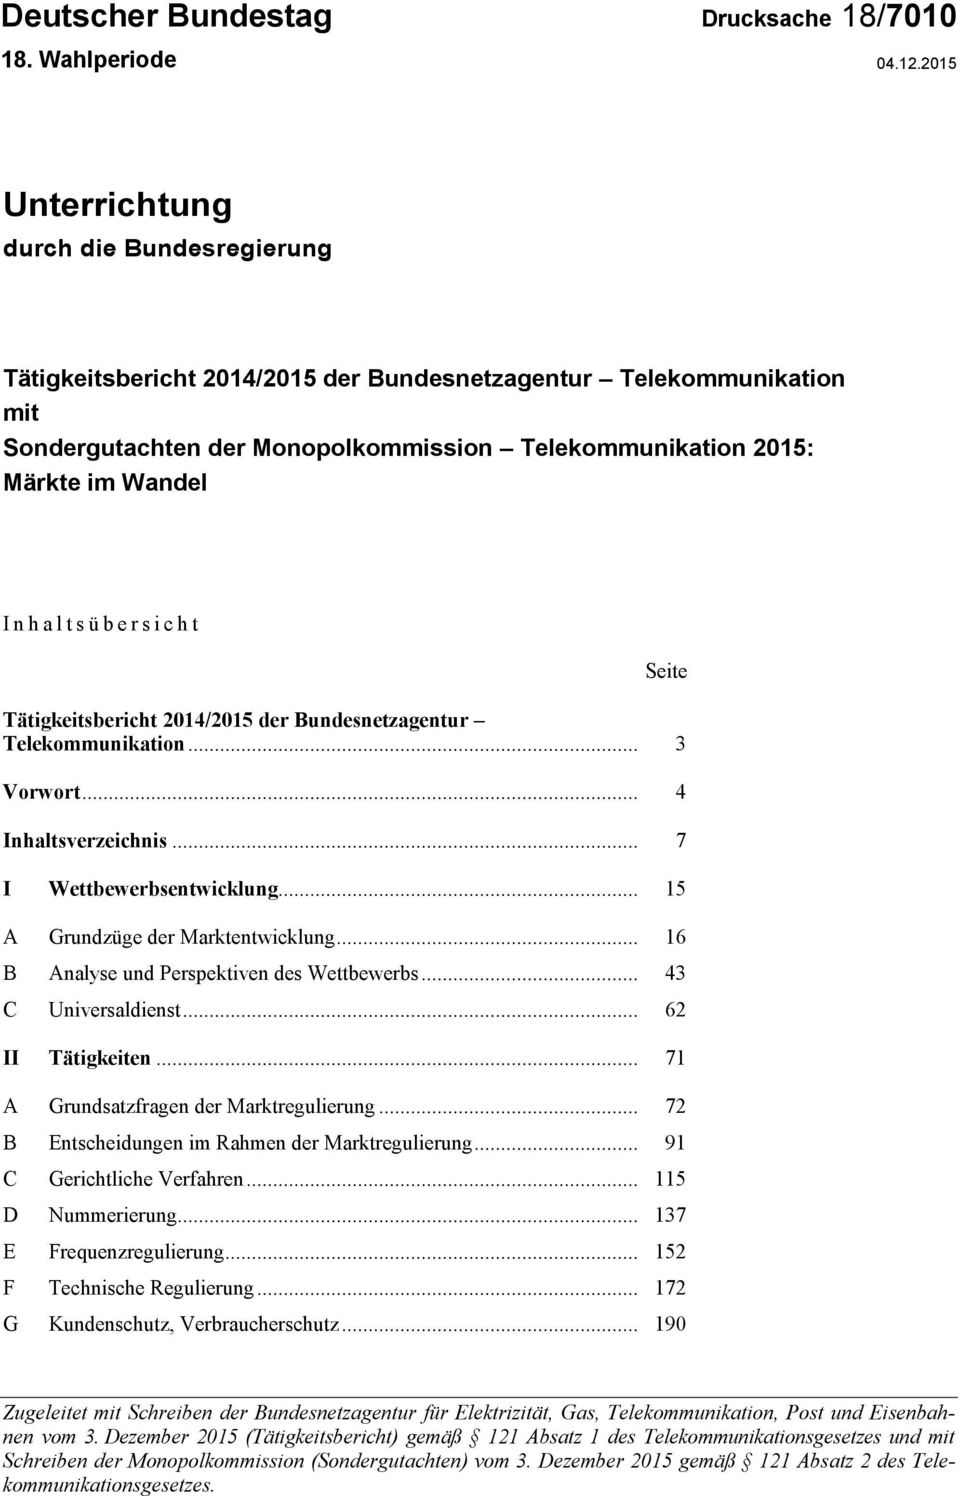 h a l t s ü b e r s i c h t Seite Tätigkeitsbericht 2014/2015 der Bundesnetzagentur Telekommunikation... 3 Vorwort... 4 Inhaltsverzeichnis... 7 I Wettbewerbsentwicklung.